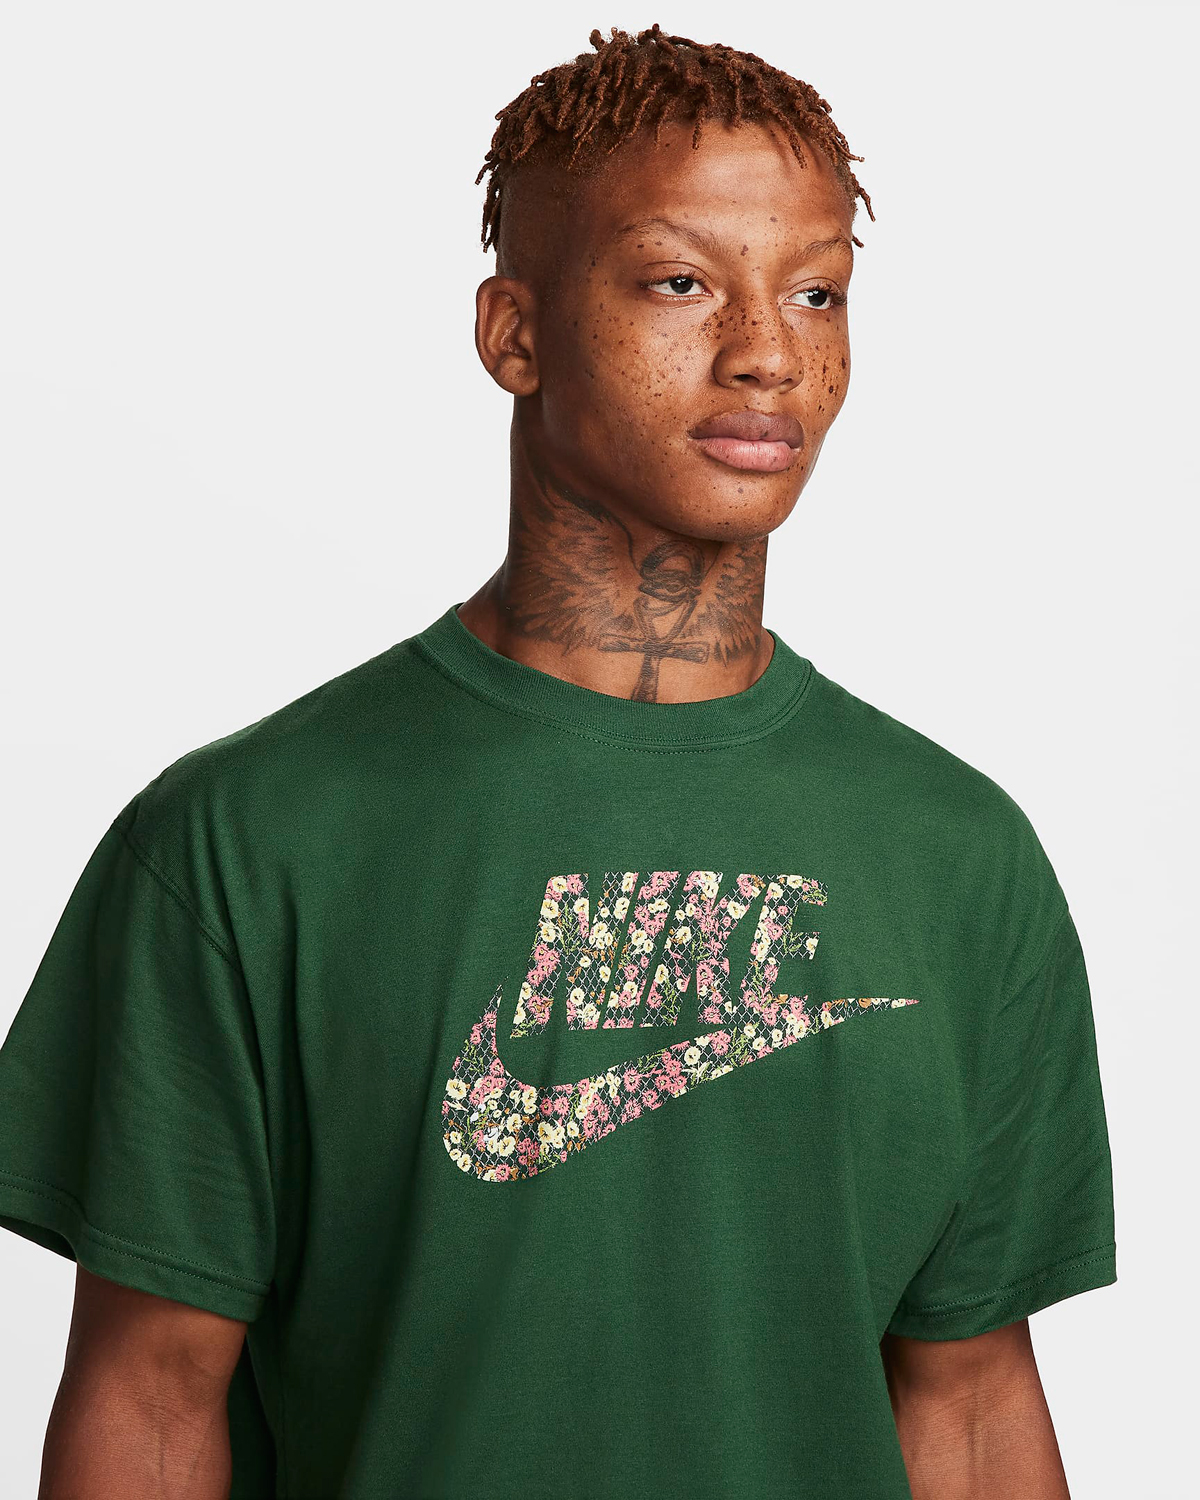 Nike-Sportswear-Floral-T-Shirt-Fir-Green-2